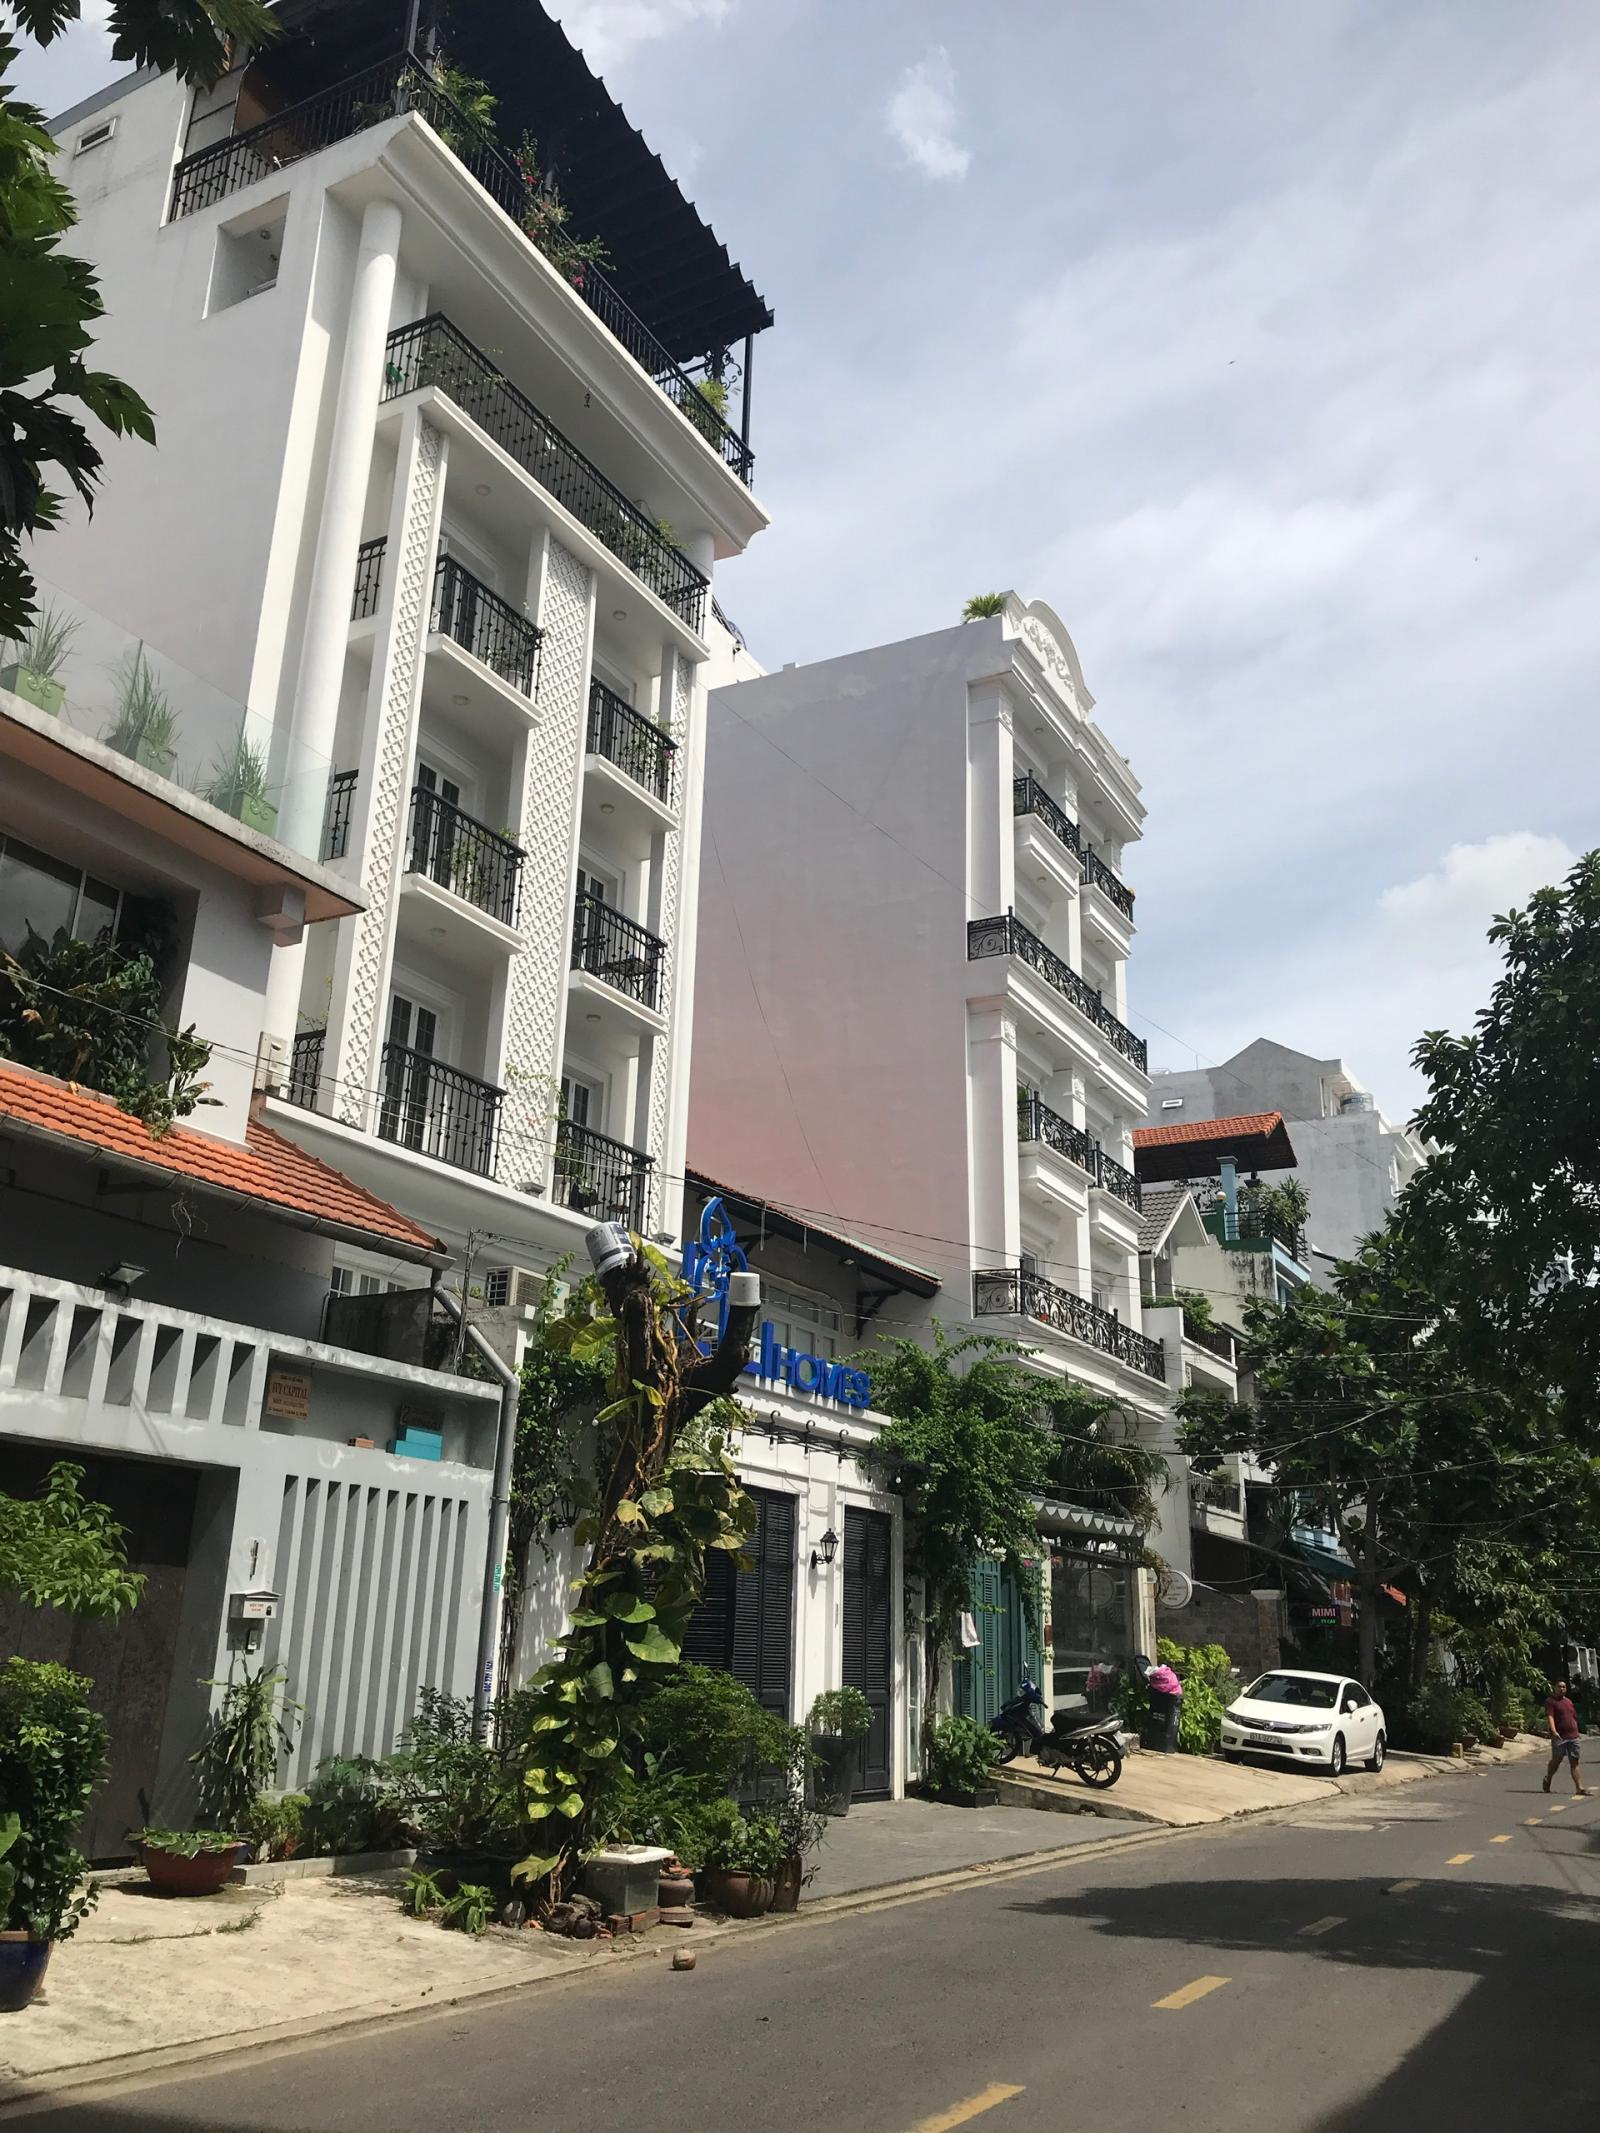 Bán nhà mới xây mặt tiền đường Xuân Thủy  Phường Thảo Điền Quận 2, DT 163m2